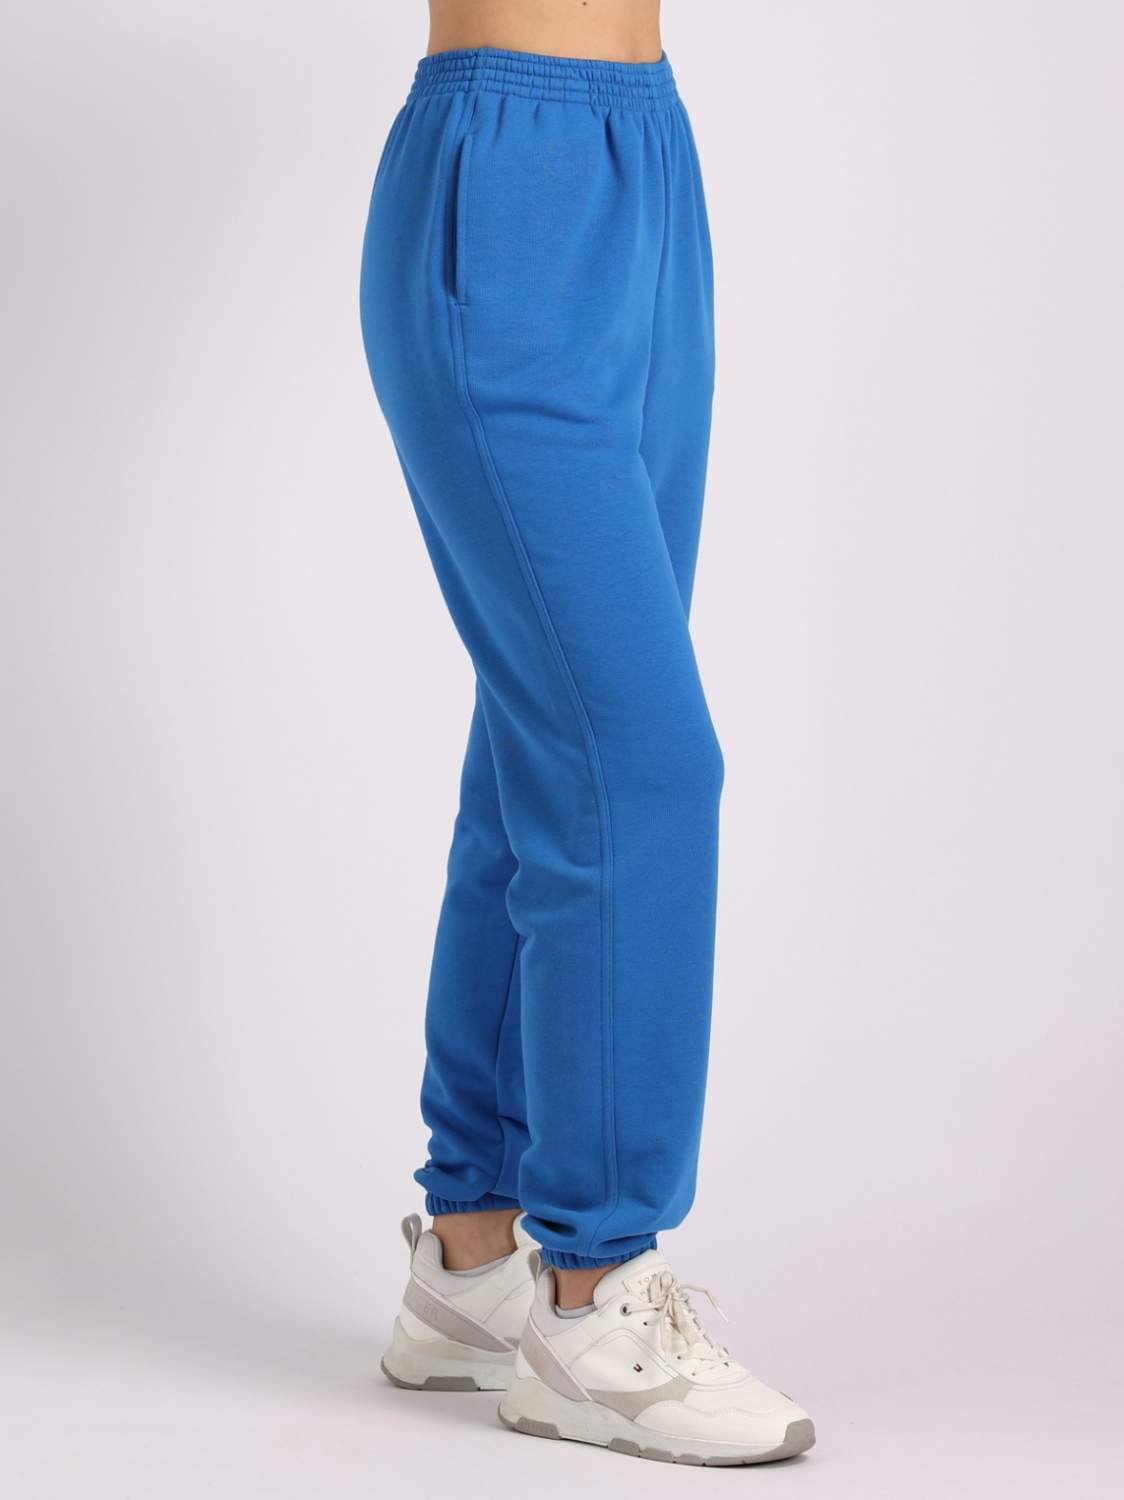 Спортивные брюки женские Argo Classic B 375 синие 46 RU - купить в Москве,цены на Мегамаркет